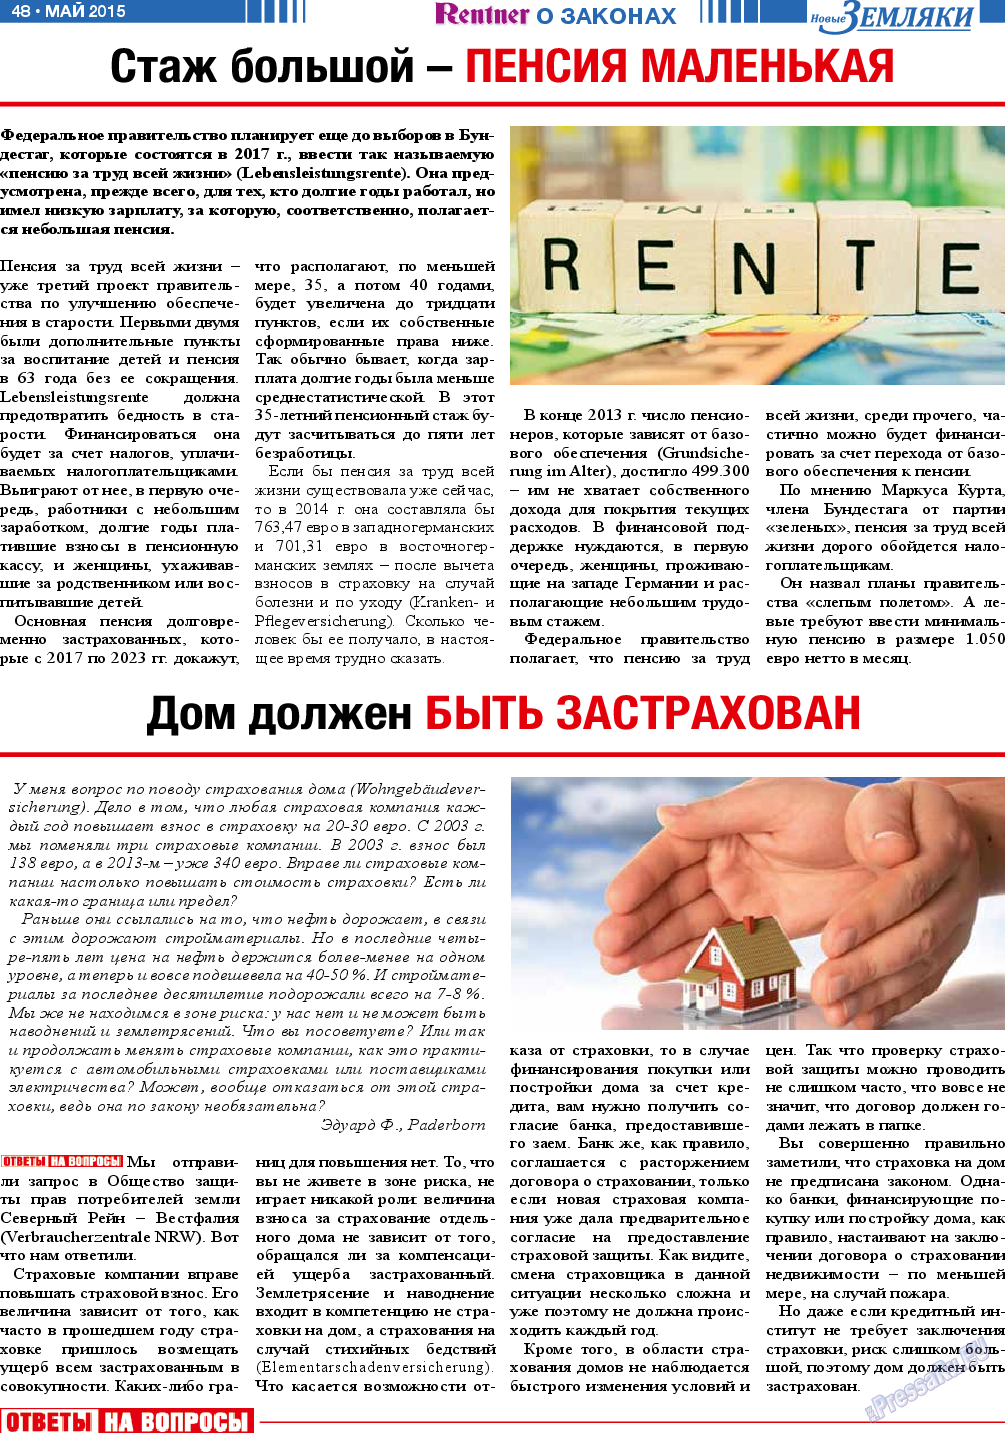 Новые Земляки, газета. 2015 №5 стр.48